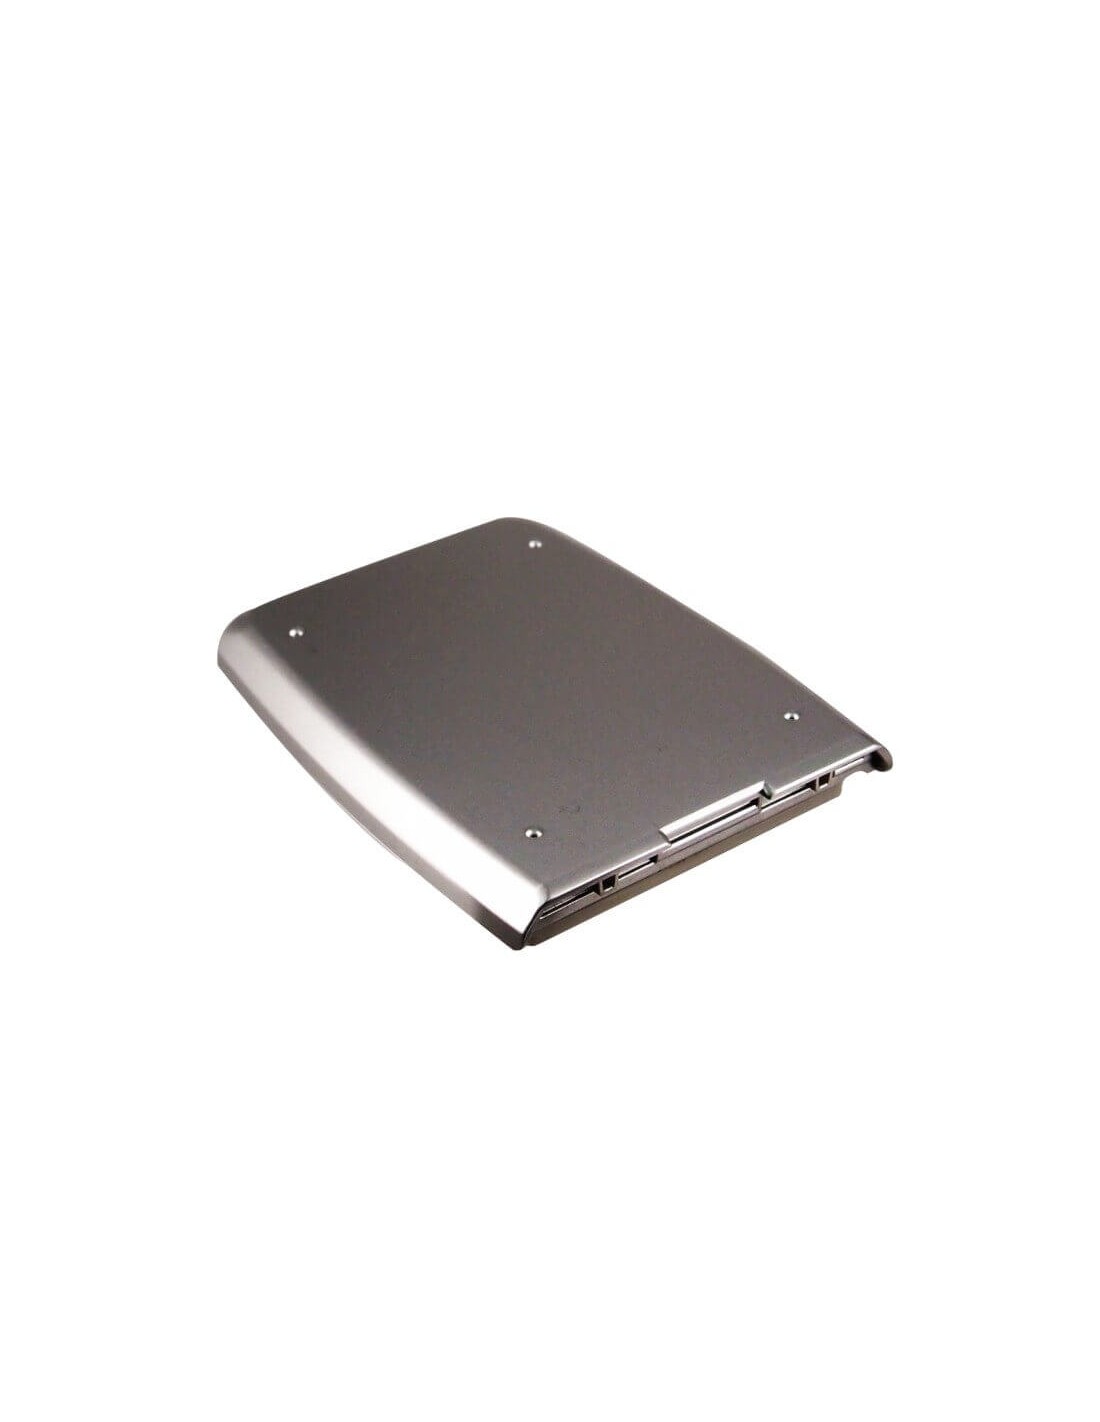 Battery for Audiovox CDM-8900, CDM-8920, CDM-8930 3.7V, 1050mAh - 3.89Wh